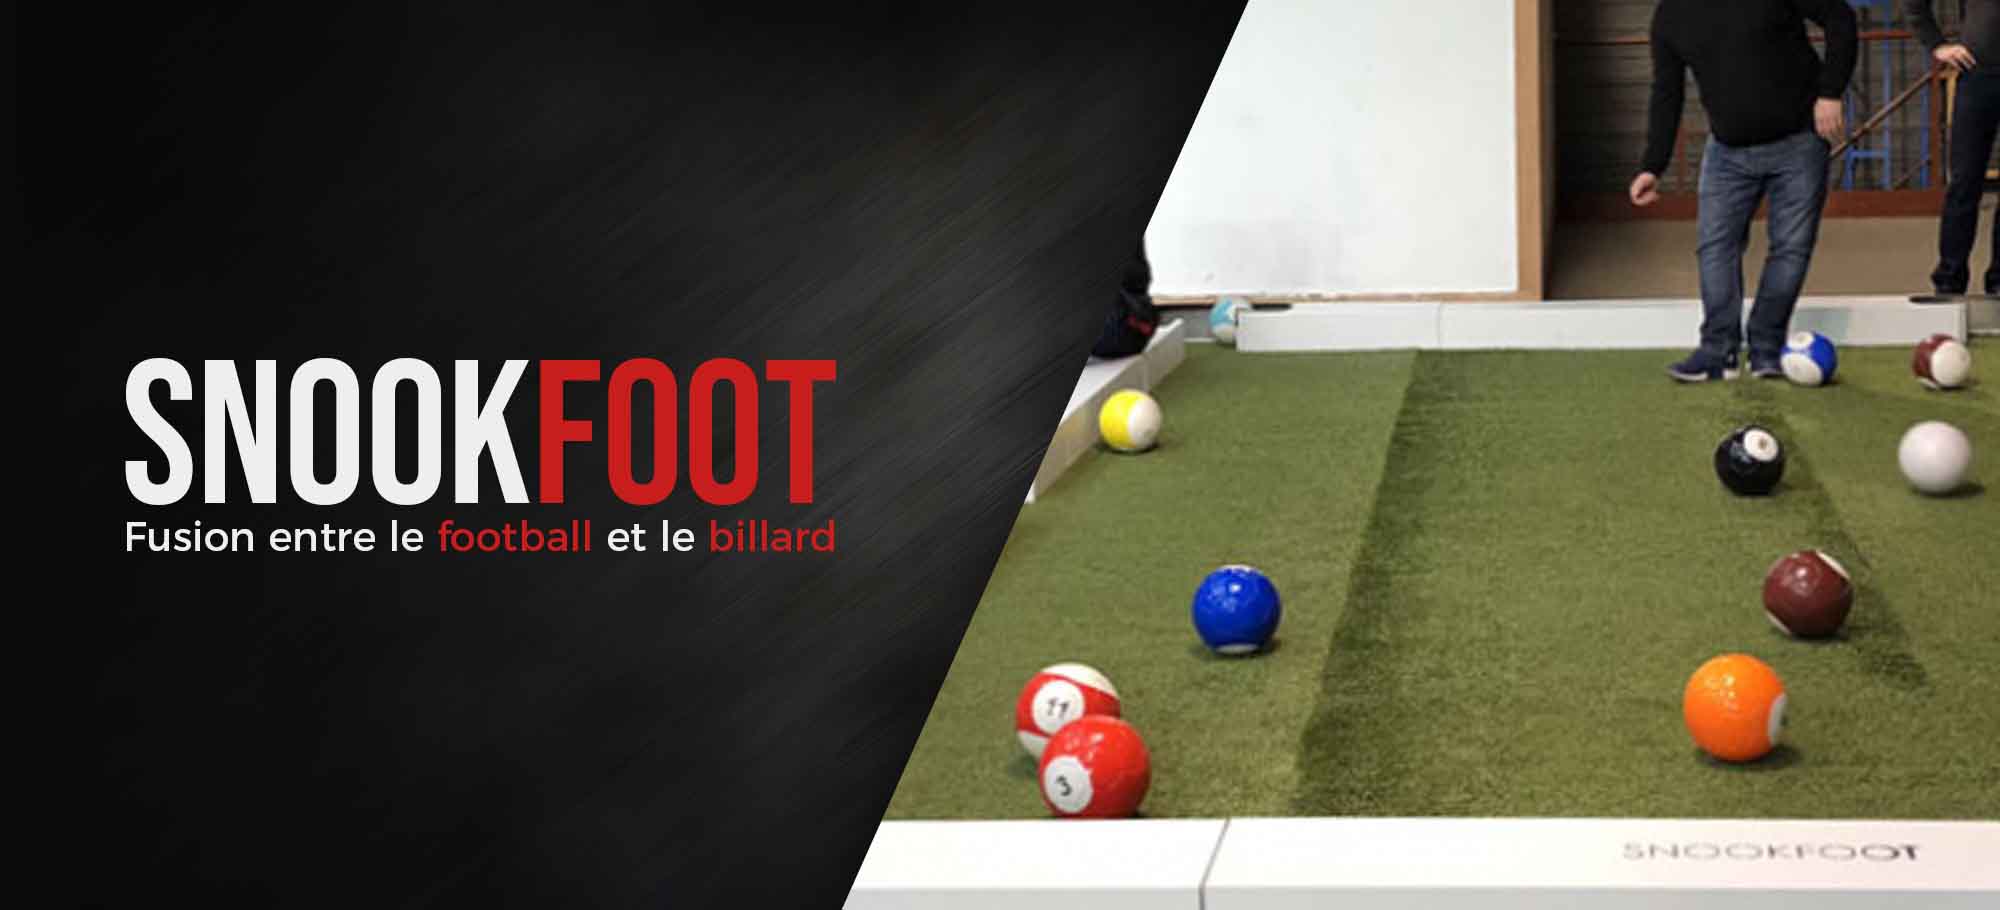 Lire la suite à propos de l’article Le Snookfoot, fusion entre le football et le billard